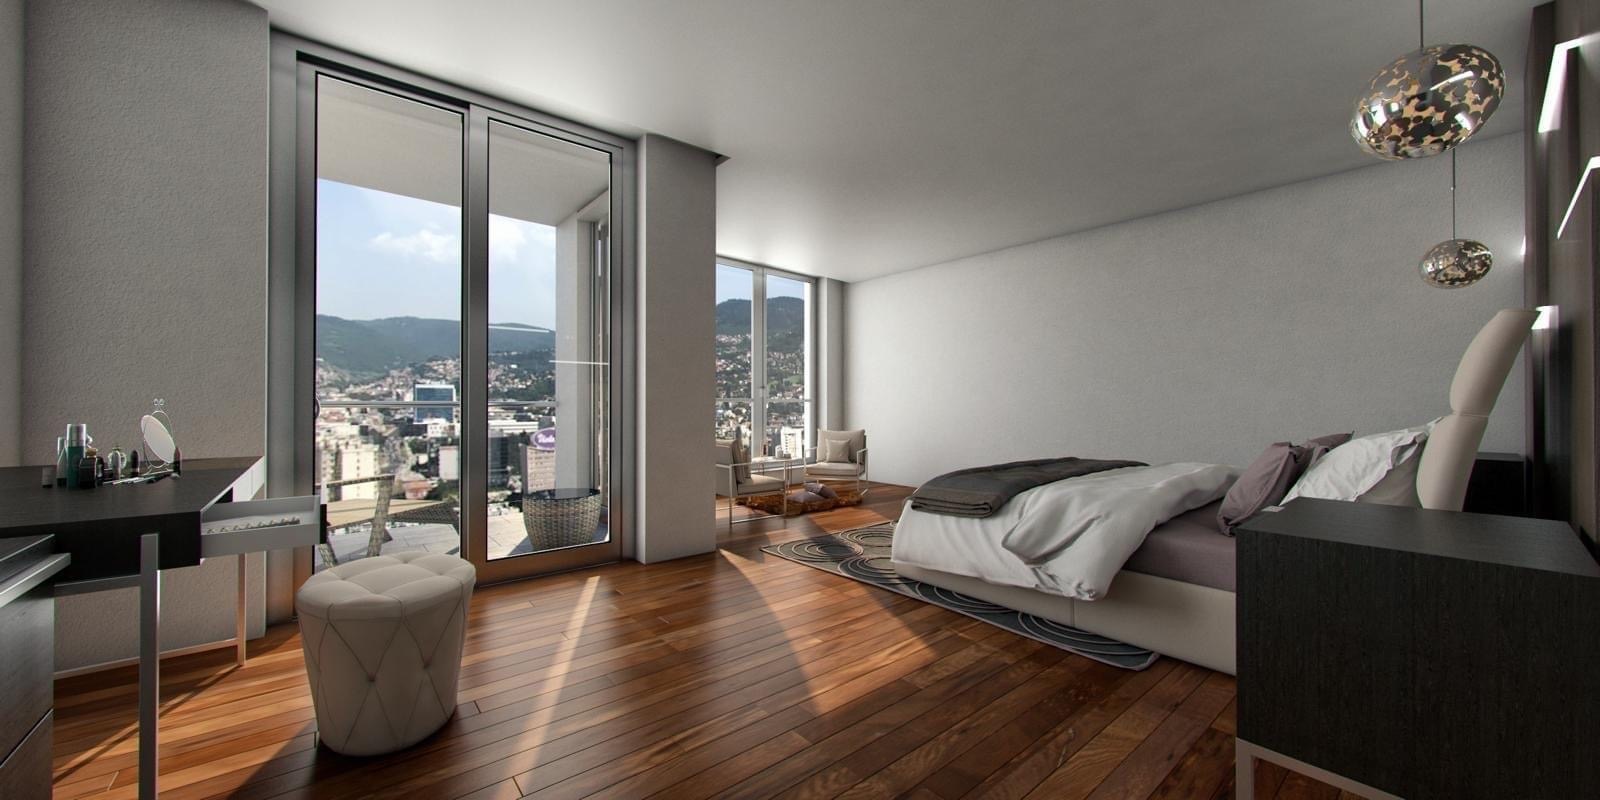 Bh. kompanija oprema penthouse od 2 miliona KM u Sarajevo Toweru